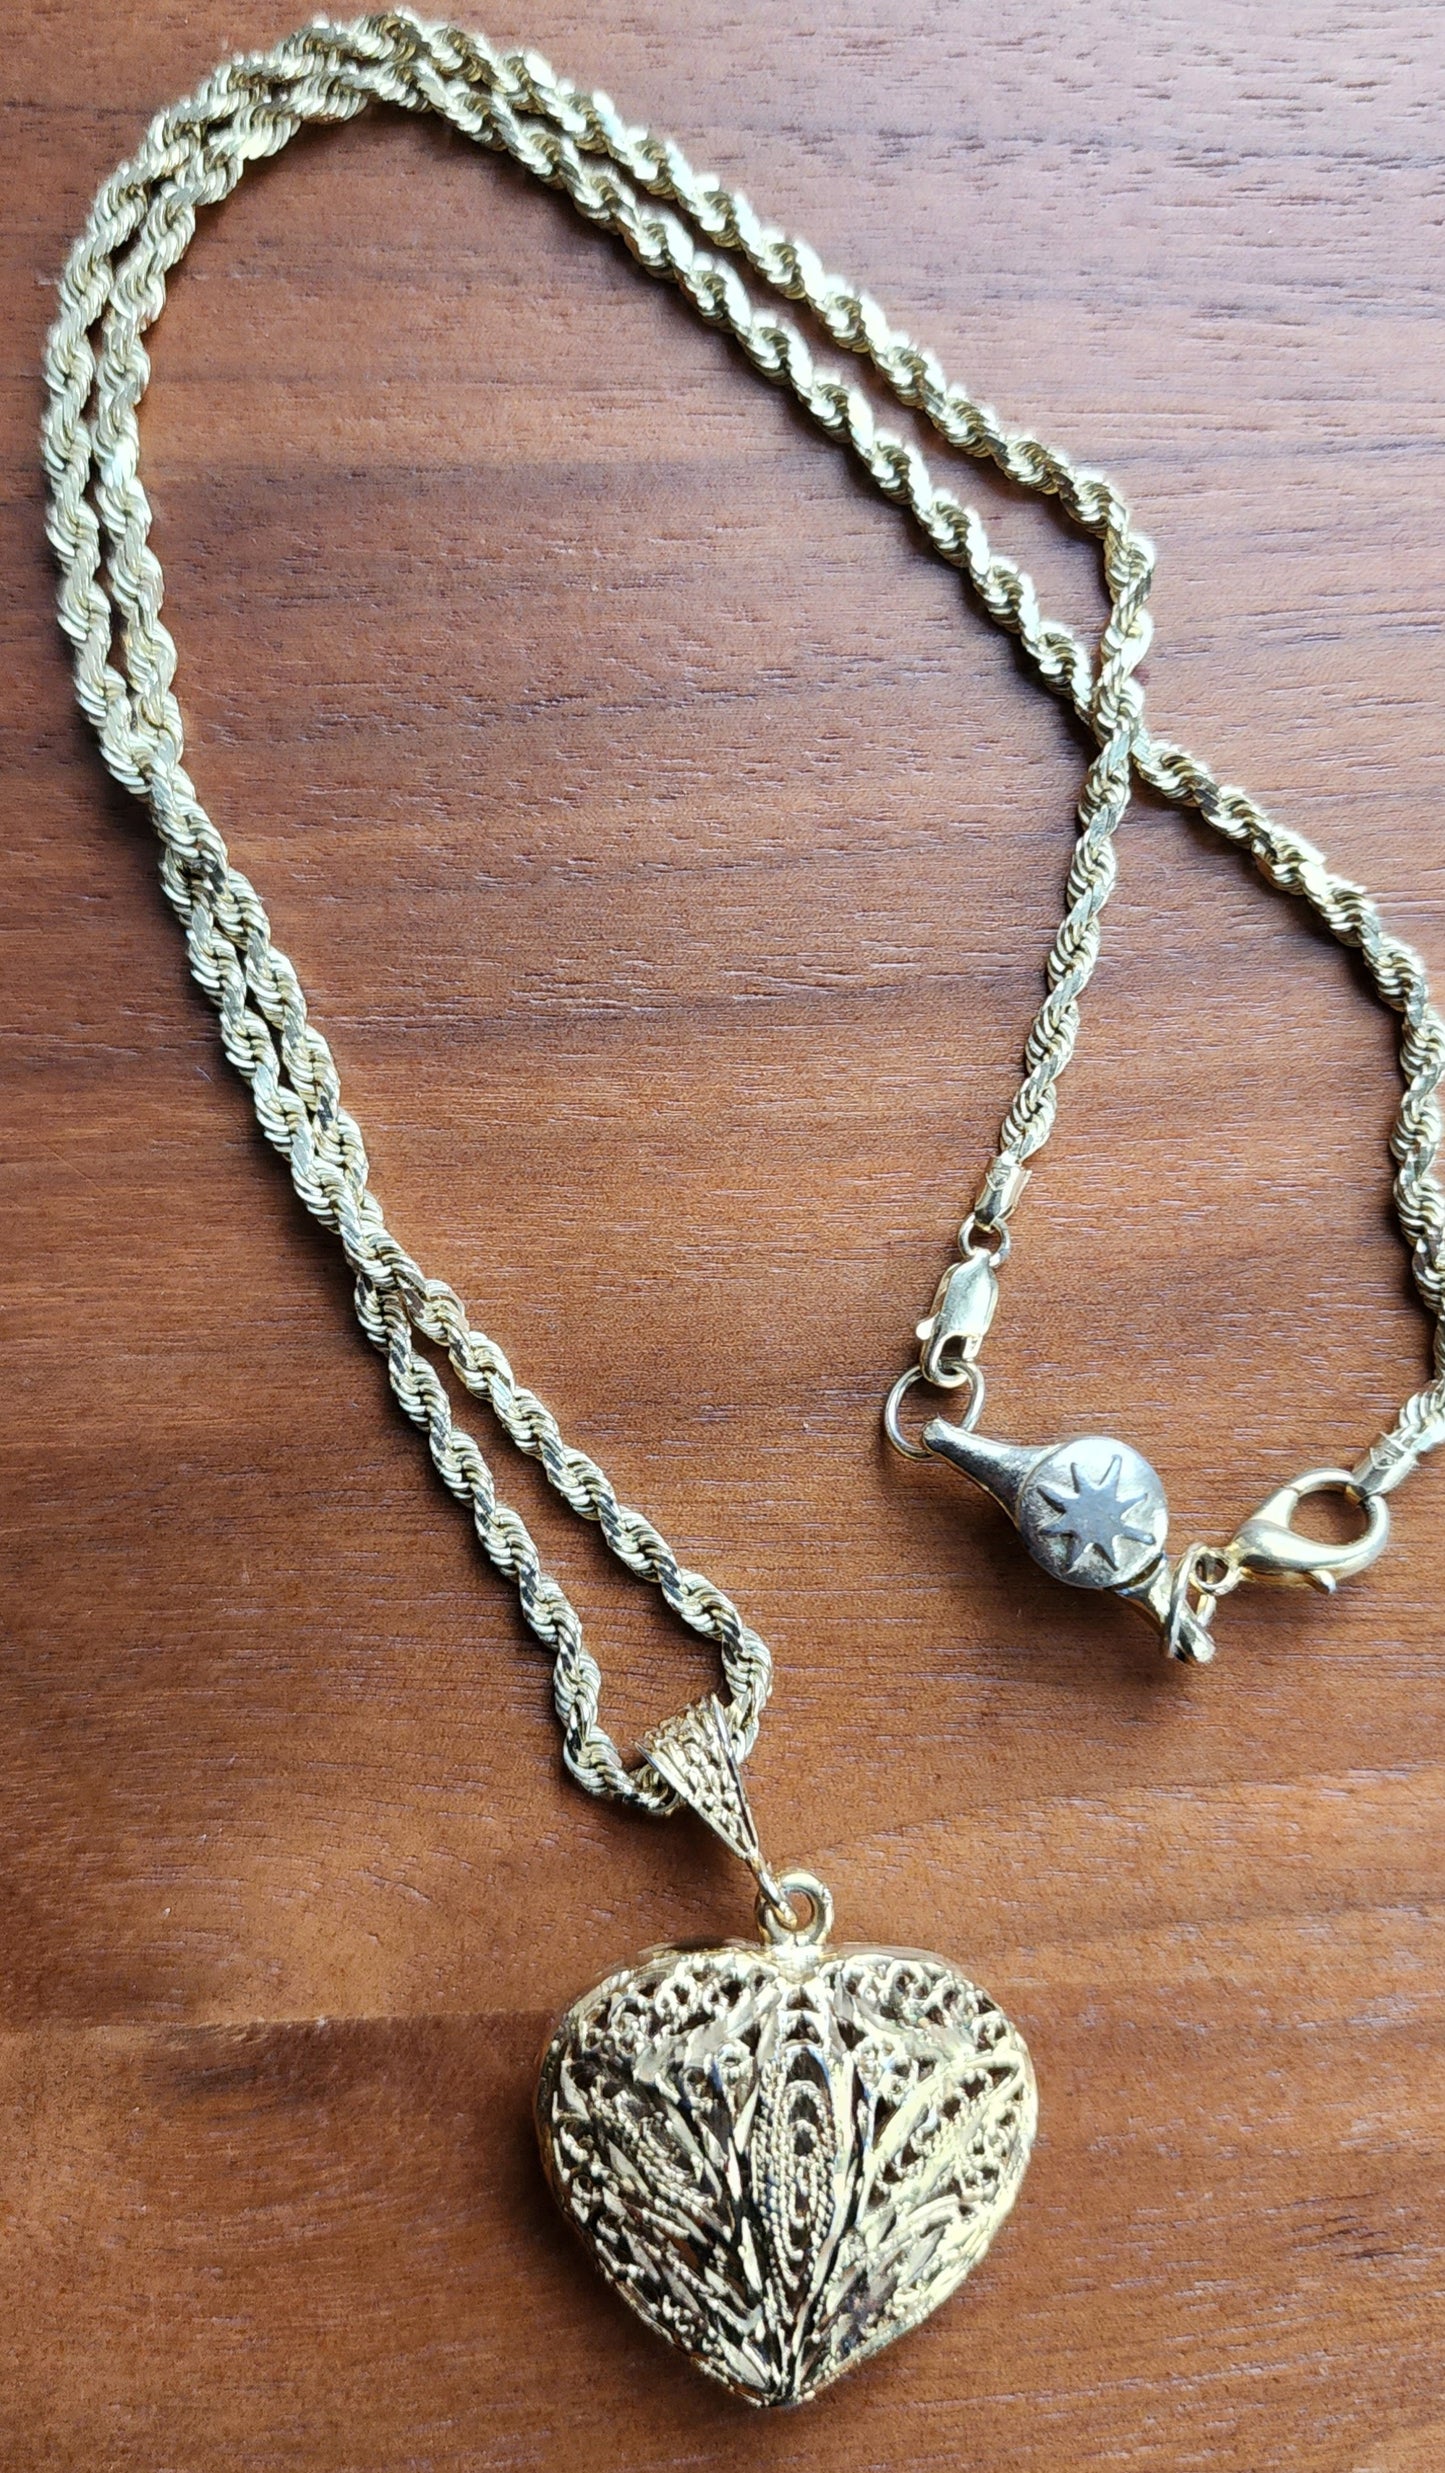 Vintage Heart Gold Pendant Necklace